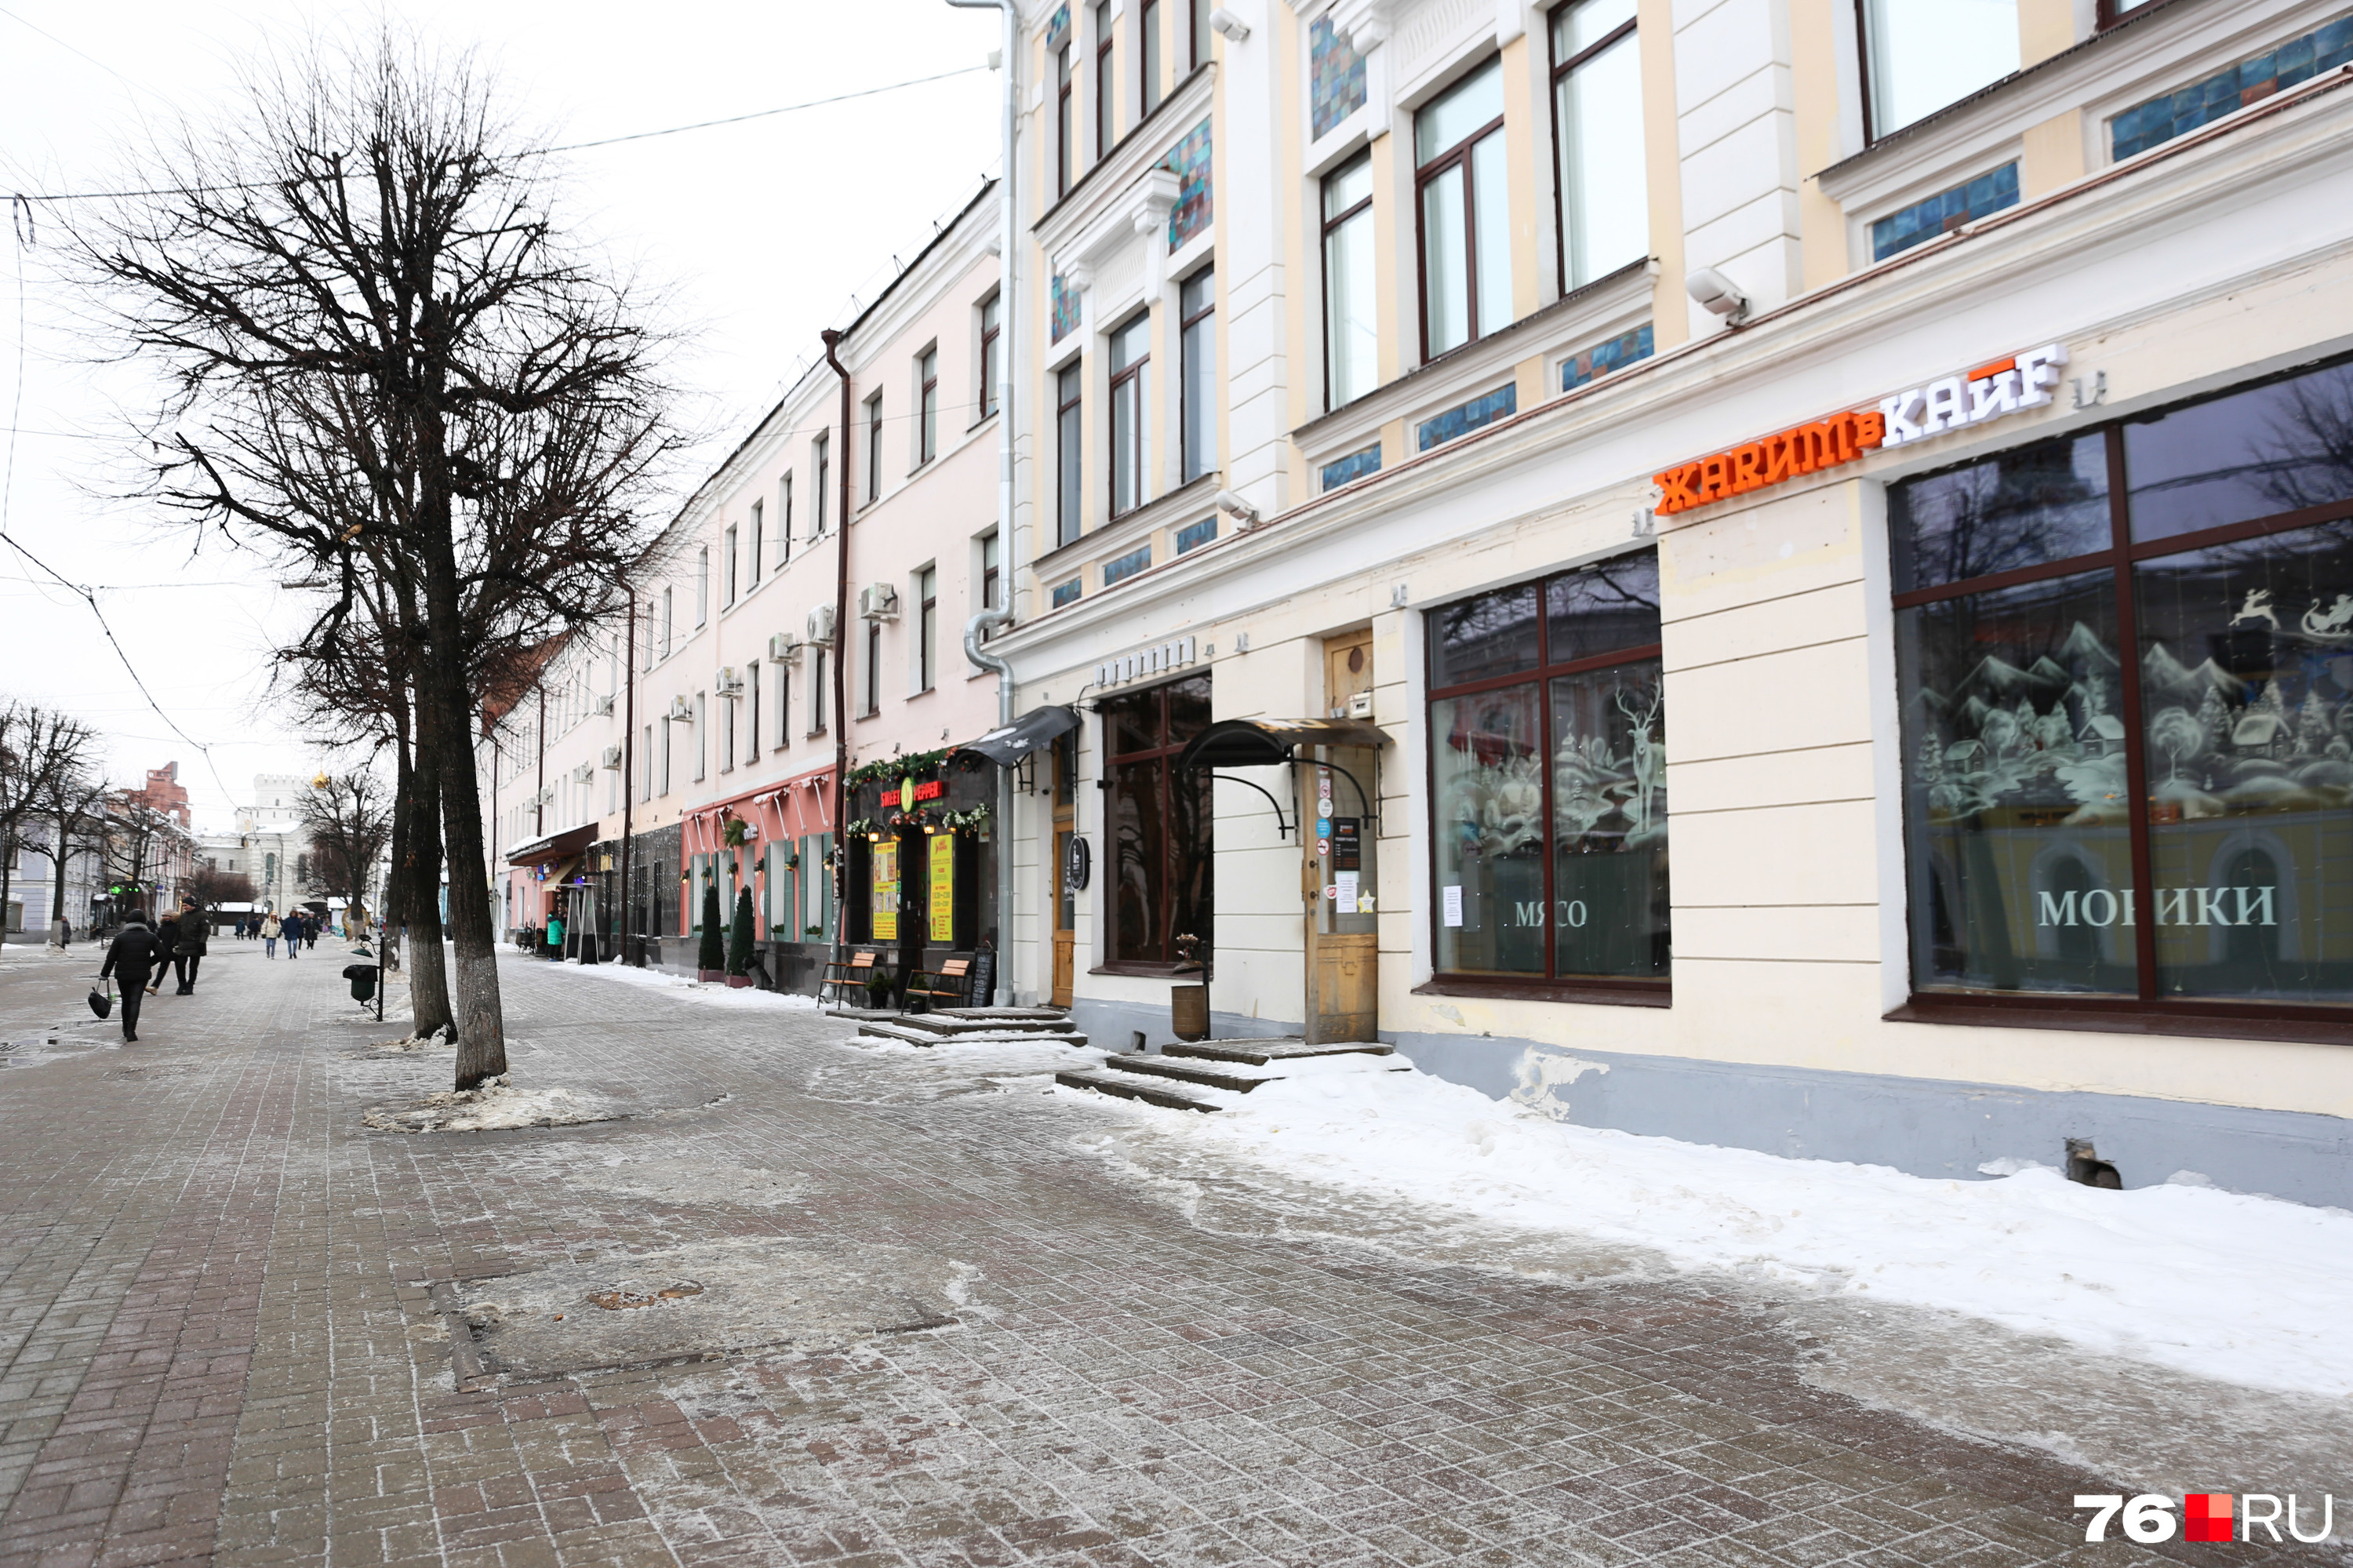 Улица Кирова расположена в самом центре Ярославля и изобилует заведениями